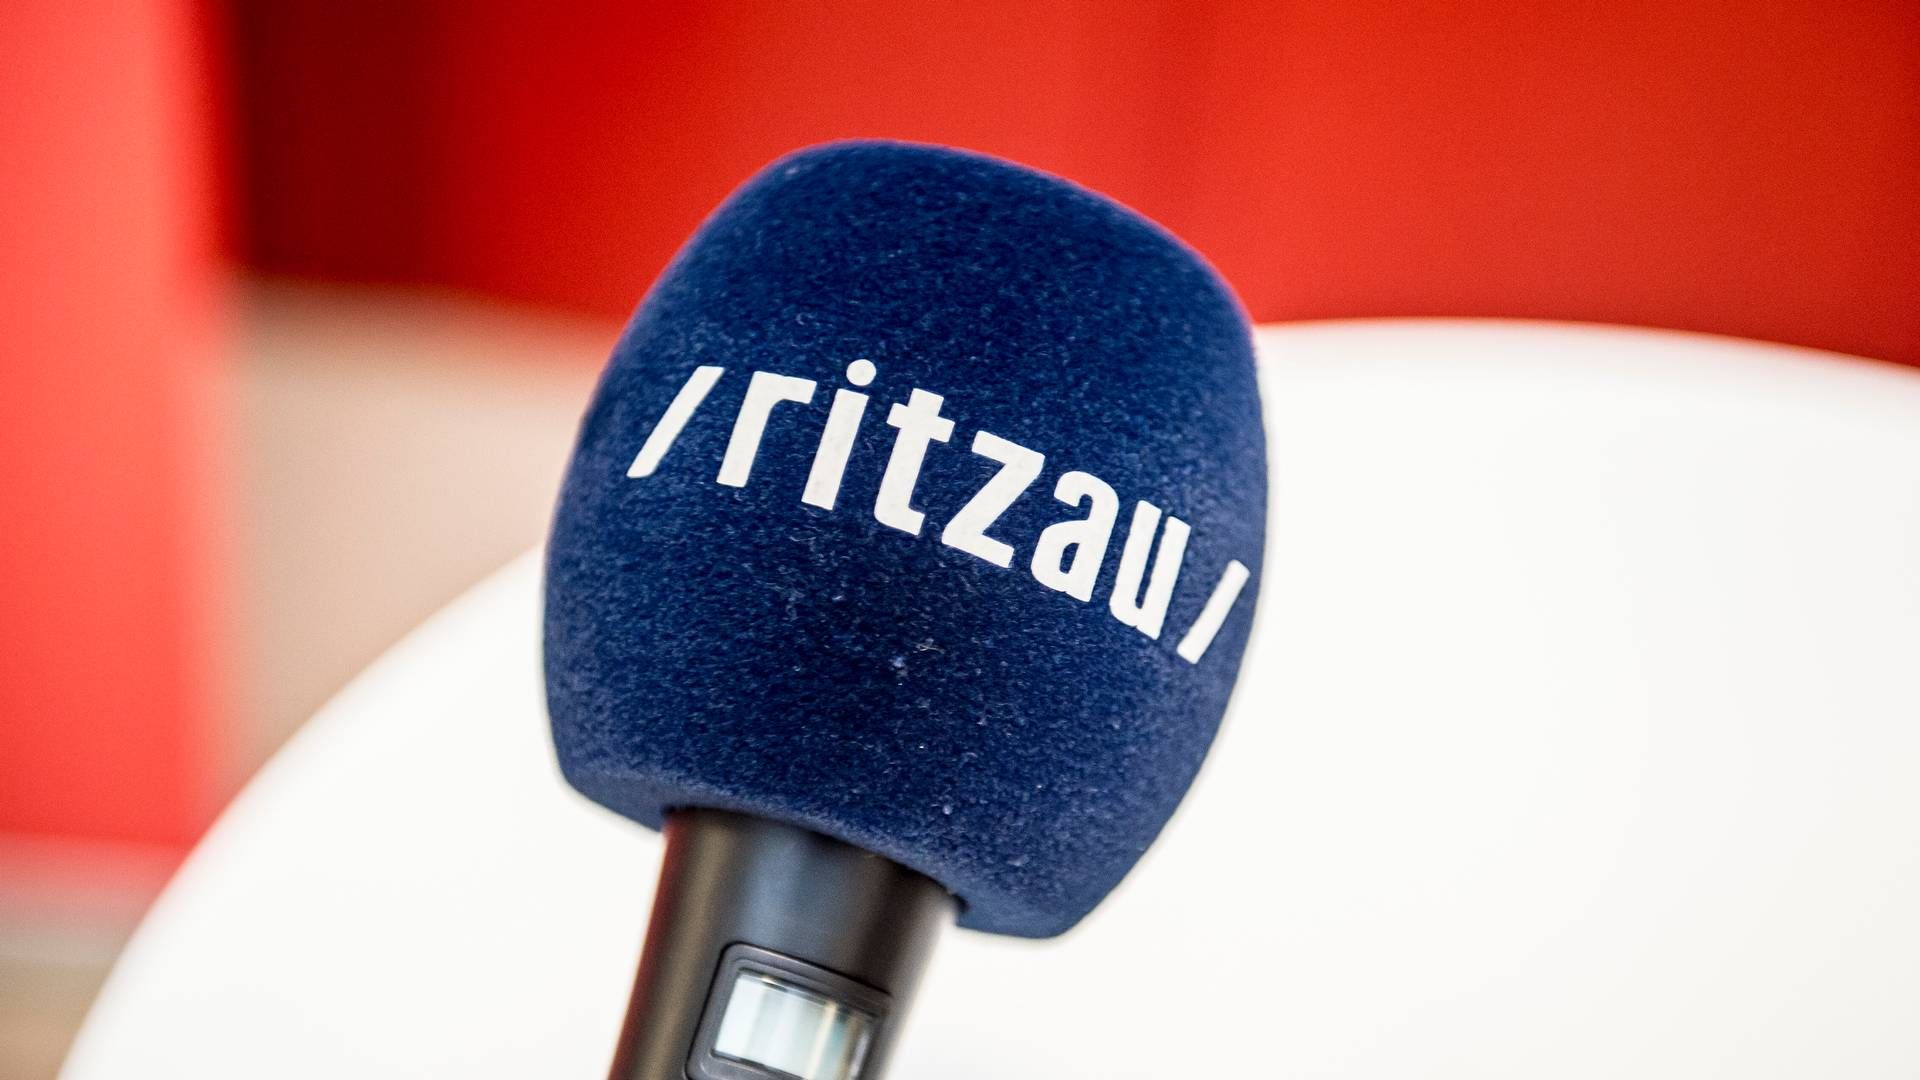 Det er fredag formiddag ikke muligt at tilgå Ritzaus nyhedstjeneste på normalvis. | Foto: Mads Claus Rasmussen/APPR/Ritzau Scanpix